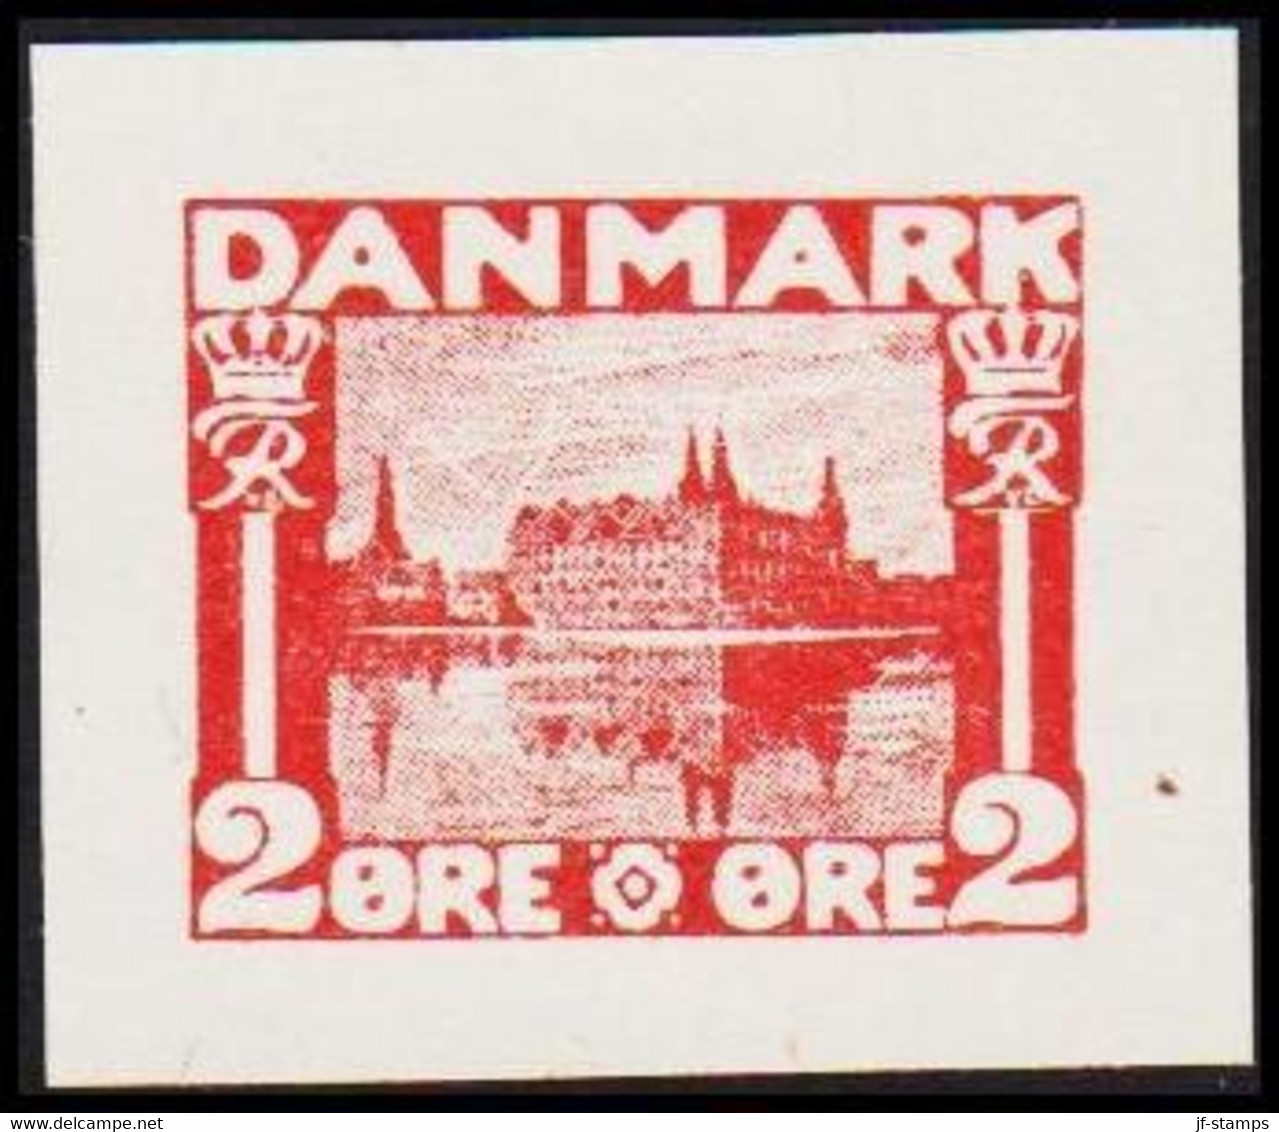 1930. DANMARK. Essay. København - Frederiksborg Slot. 2 øre. - JF525403 - Proofs & Reprints